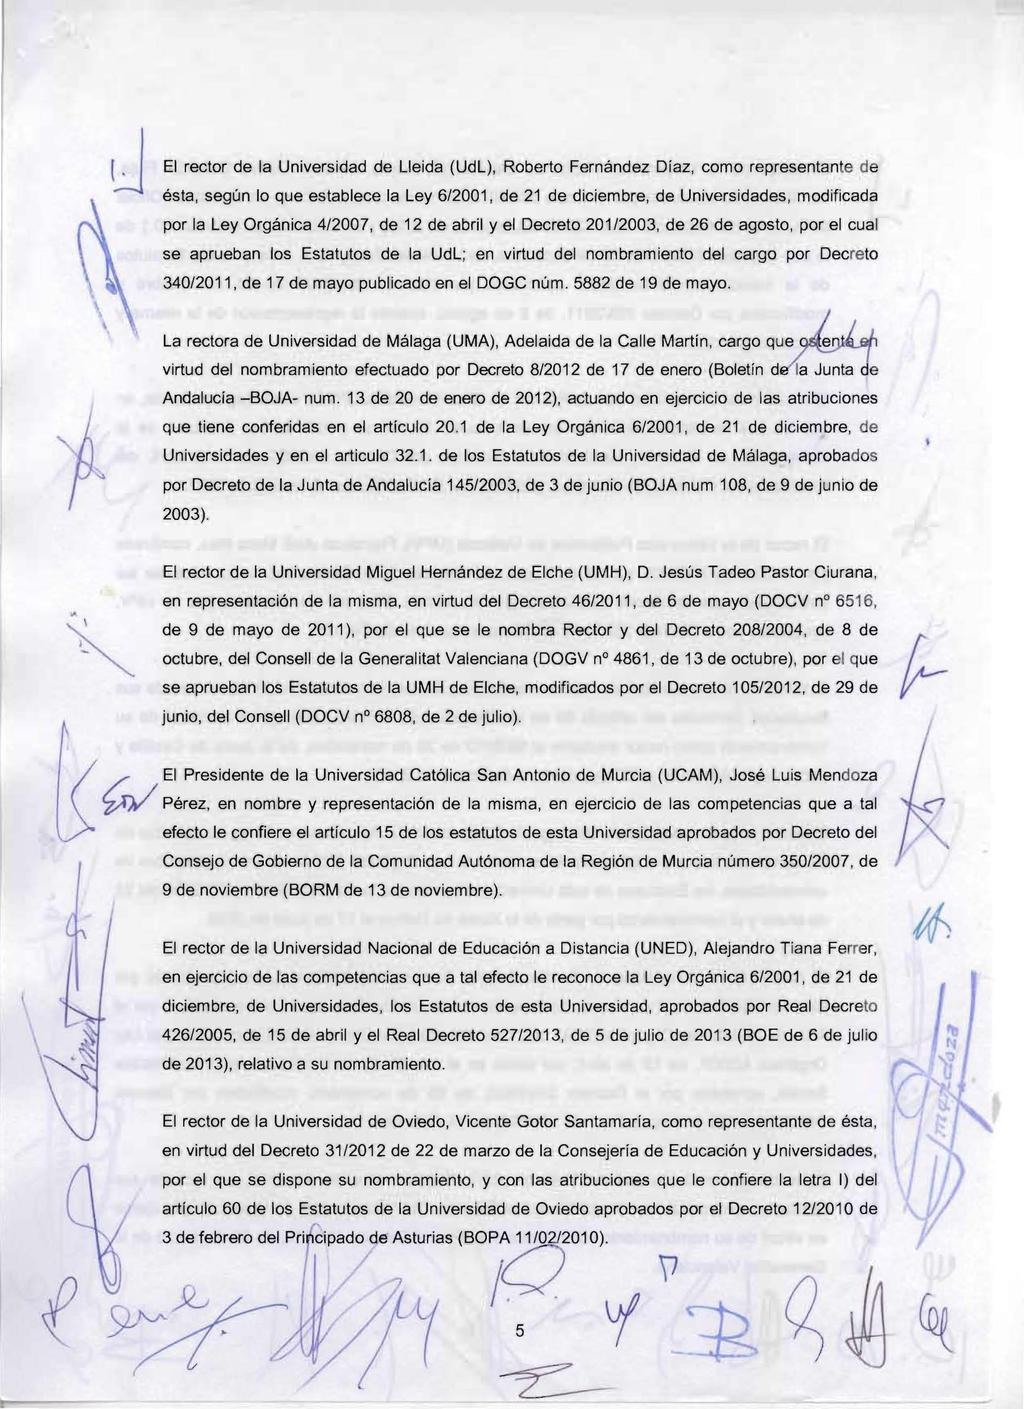 JEl rector de la Universidad de Lleida (UdL), Roberto Fernández Díaz, como representante de ésta, según lo que establece la Ley 6/2001, de 21 de diciembre, de Universidades, modificada por la Ley